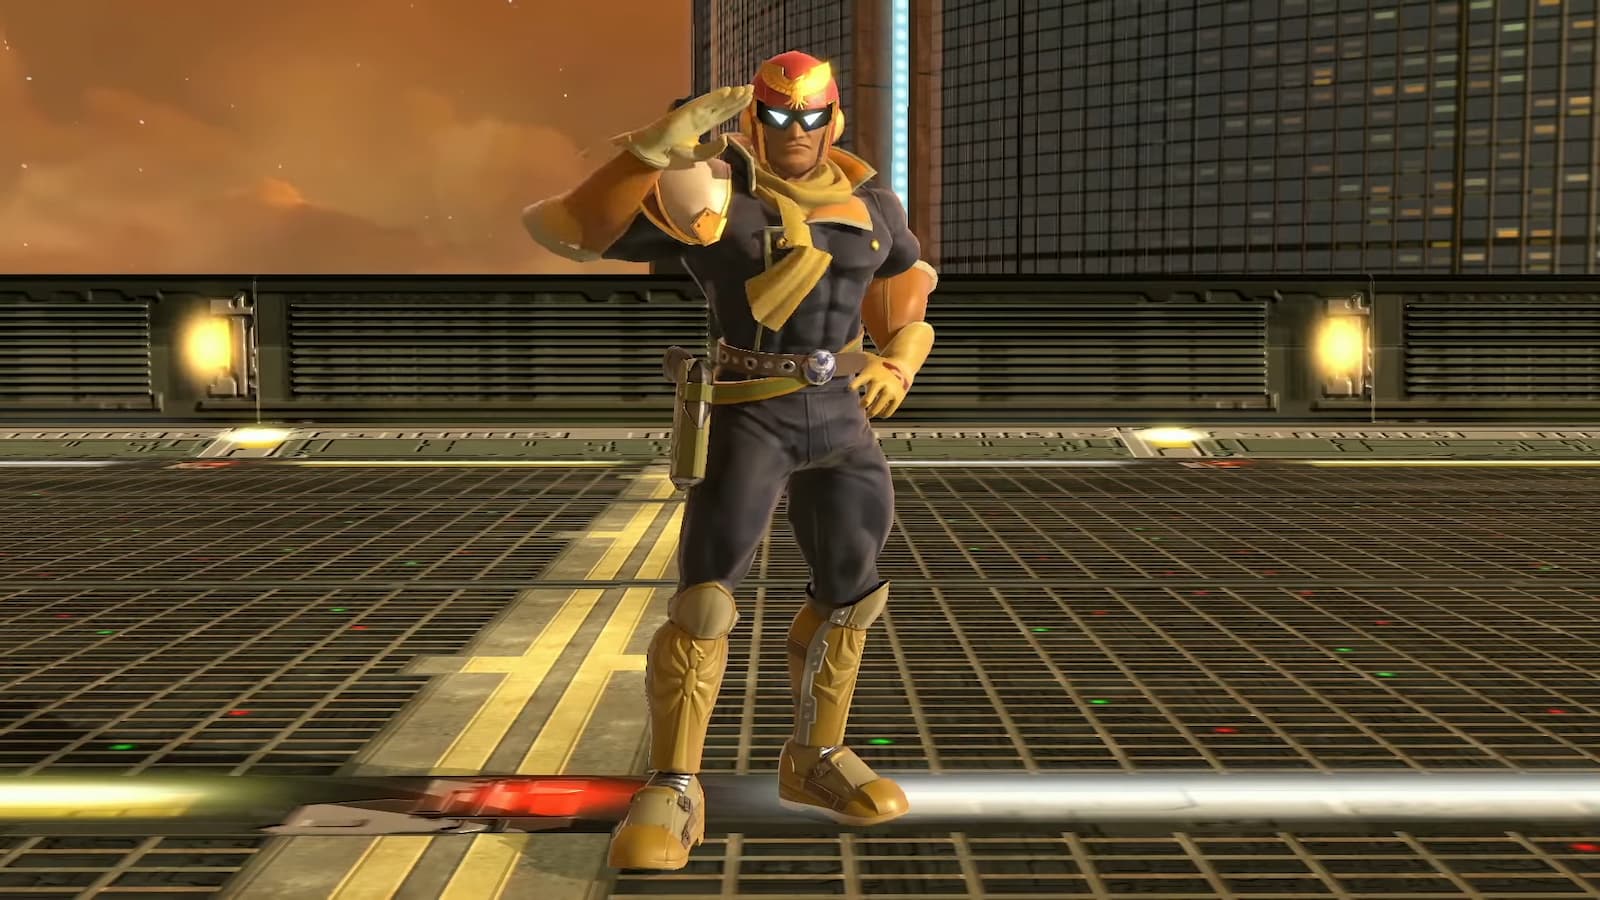 Captain Falcon saluting Smash Bros